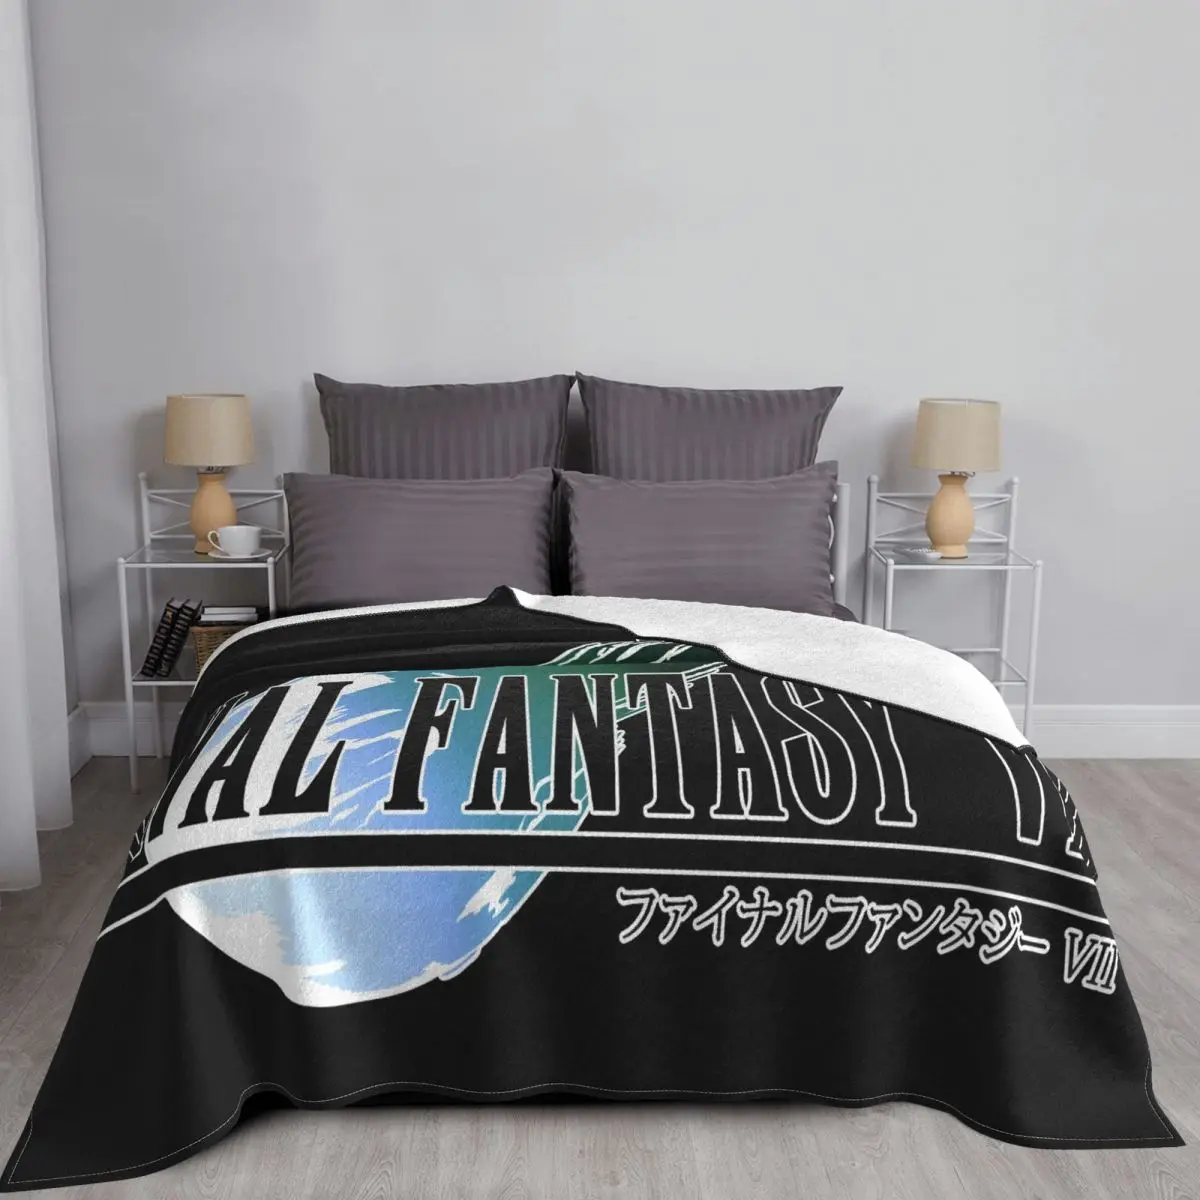 Мужская игра Final Fantasy Vii Ff7 S Белые Футболки OTops S 3 Декоративное Постельное Одеяло, Покрывало Летняя Кровать 150 Покрывало Летняя Кровать 150